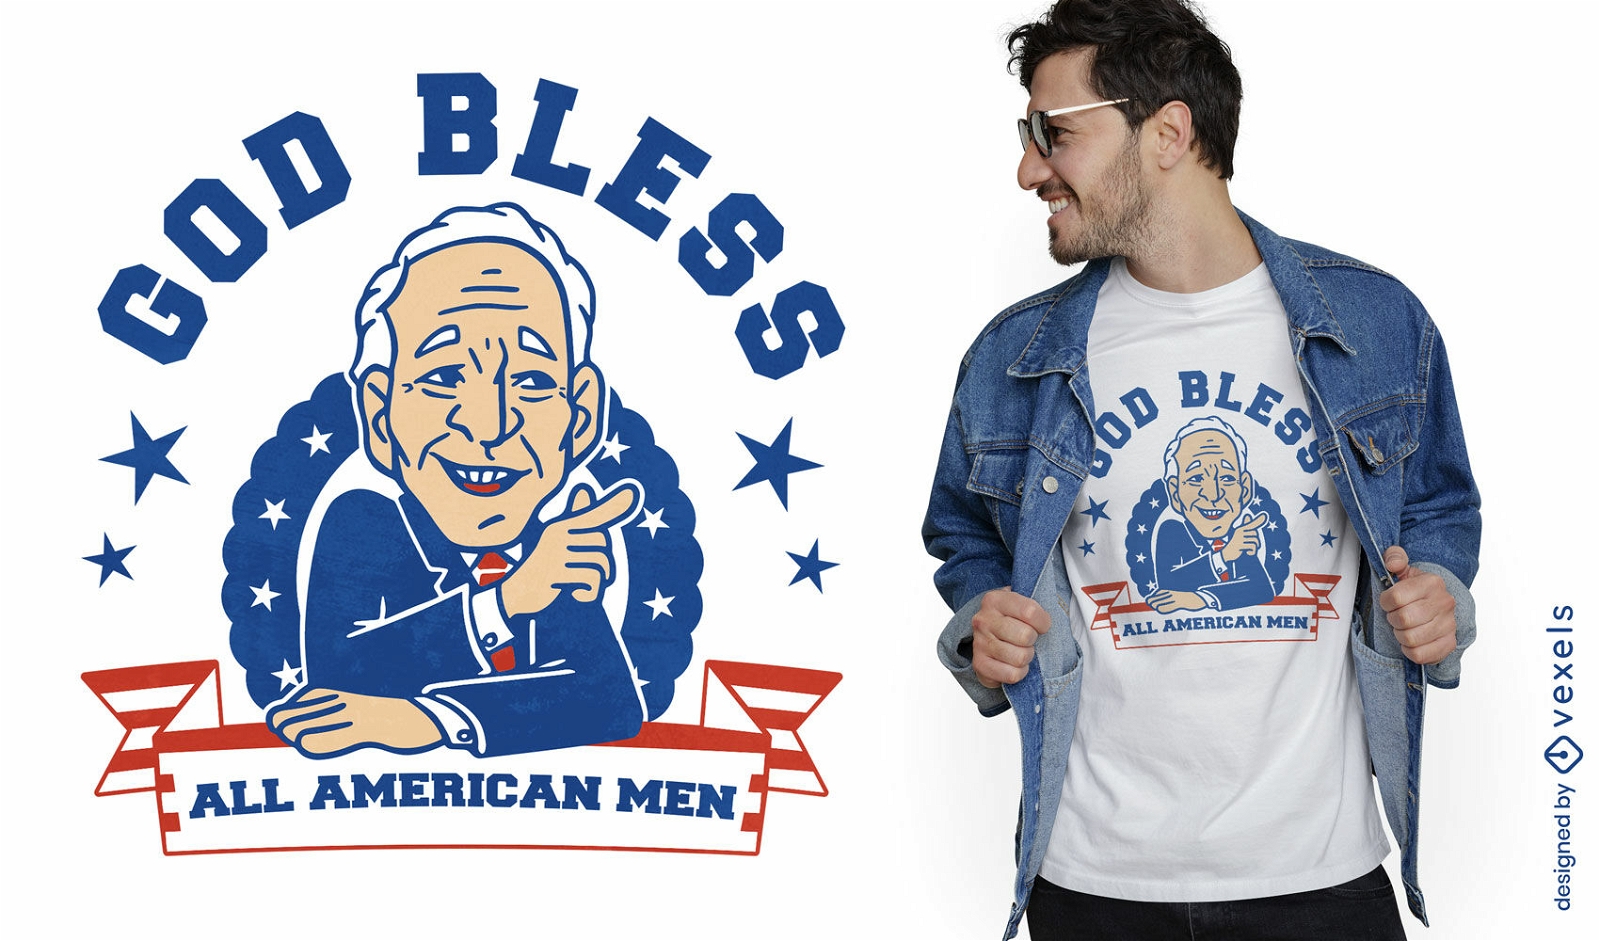 God bless American men t-shirt design